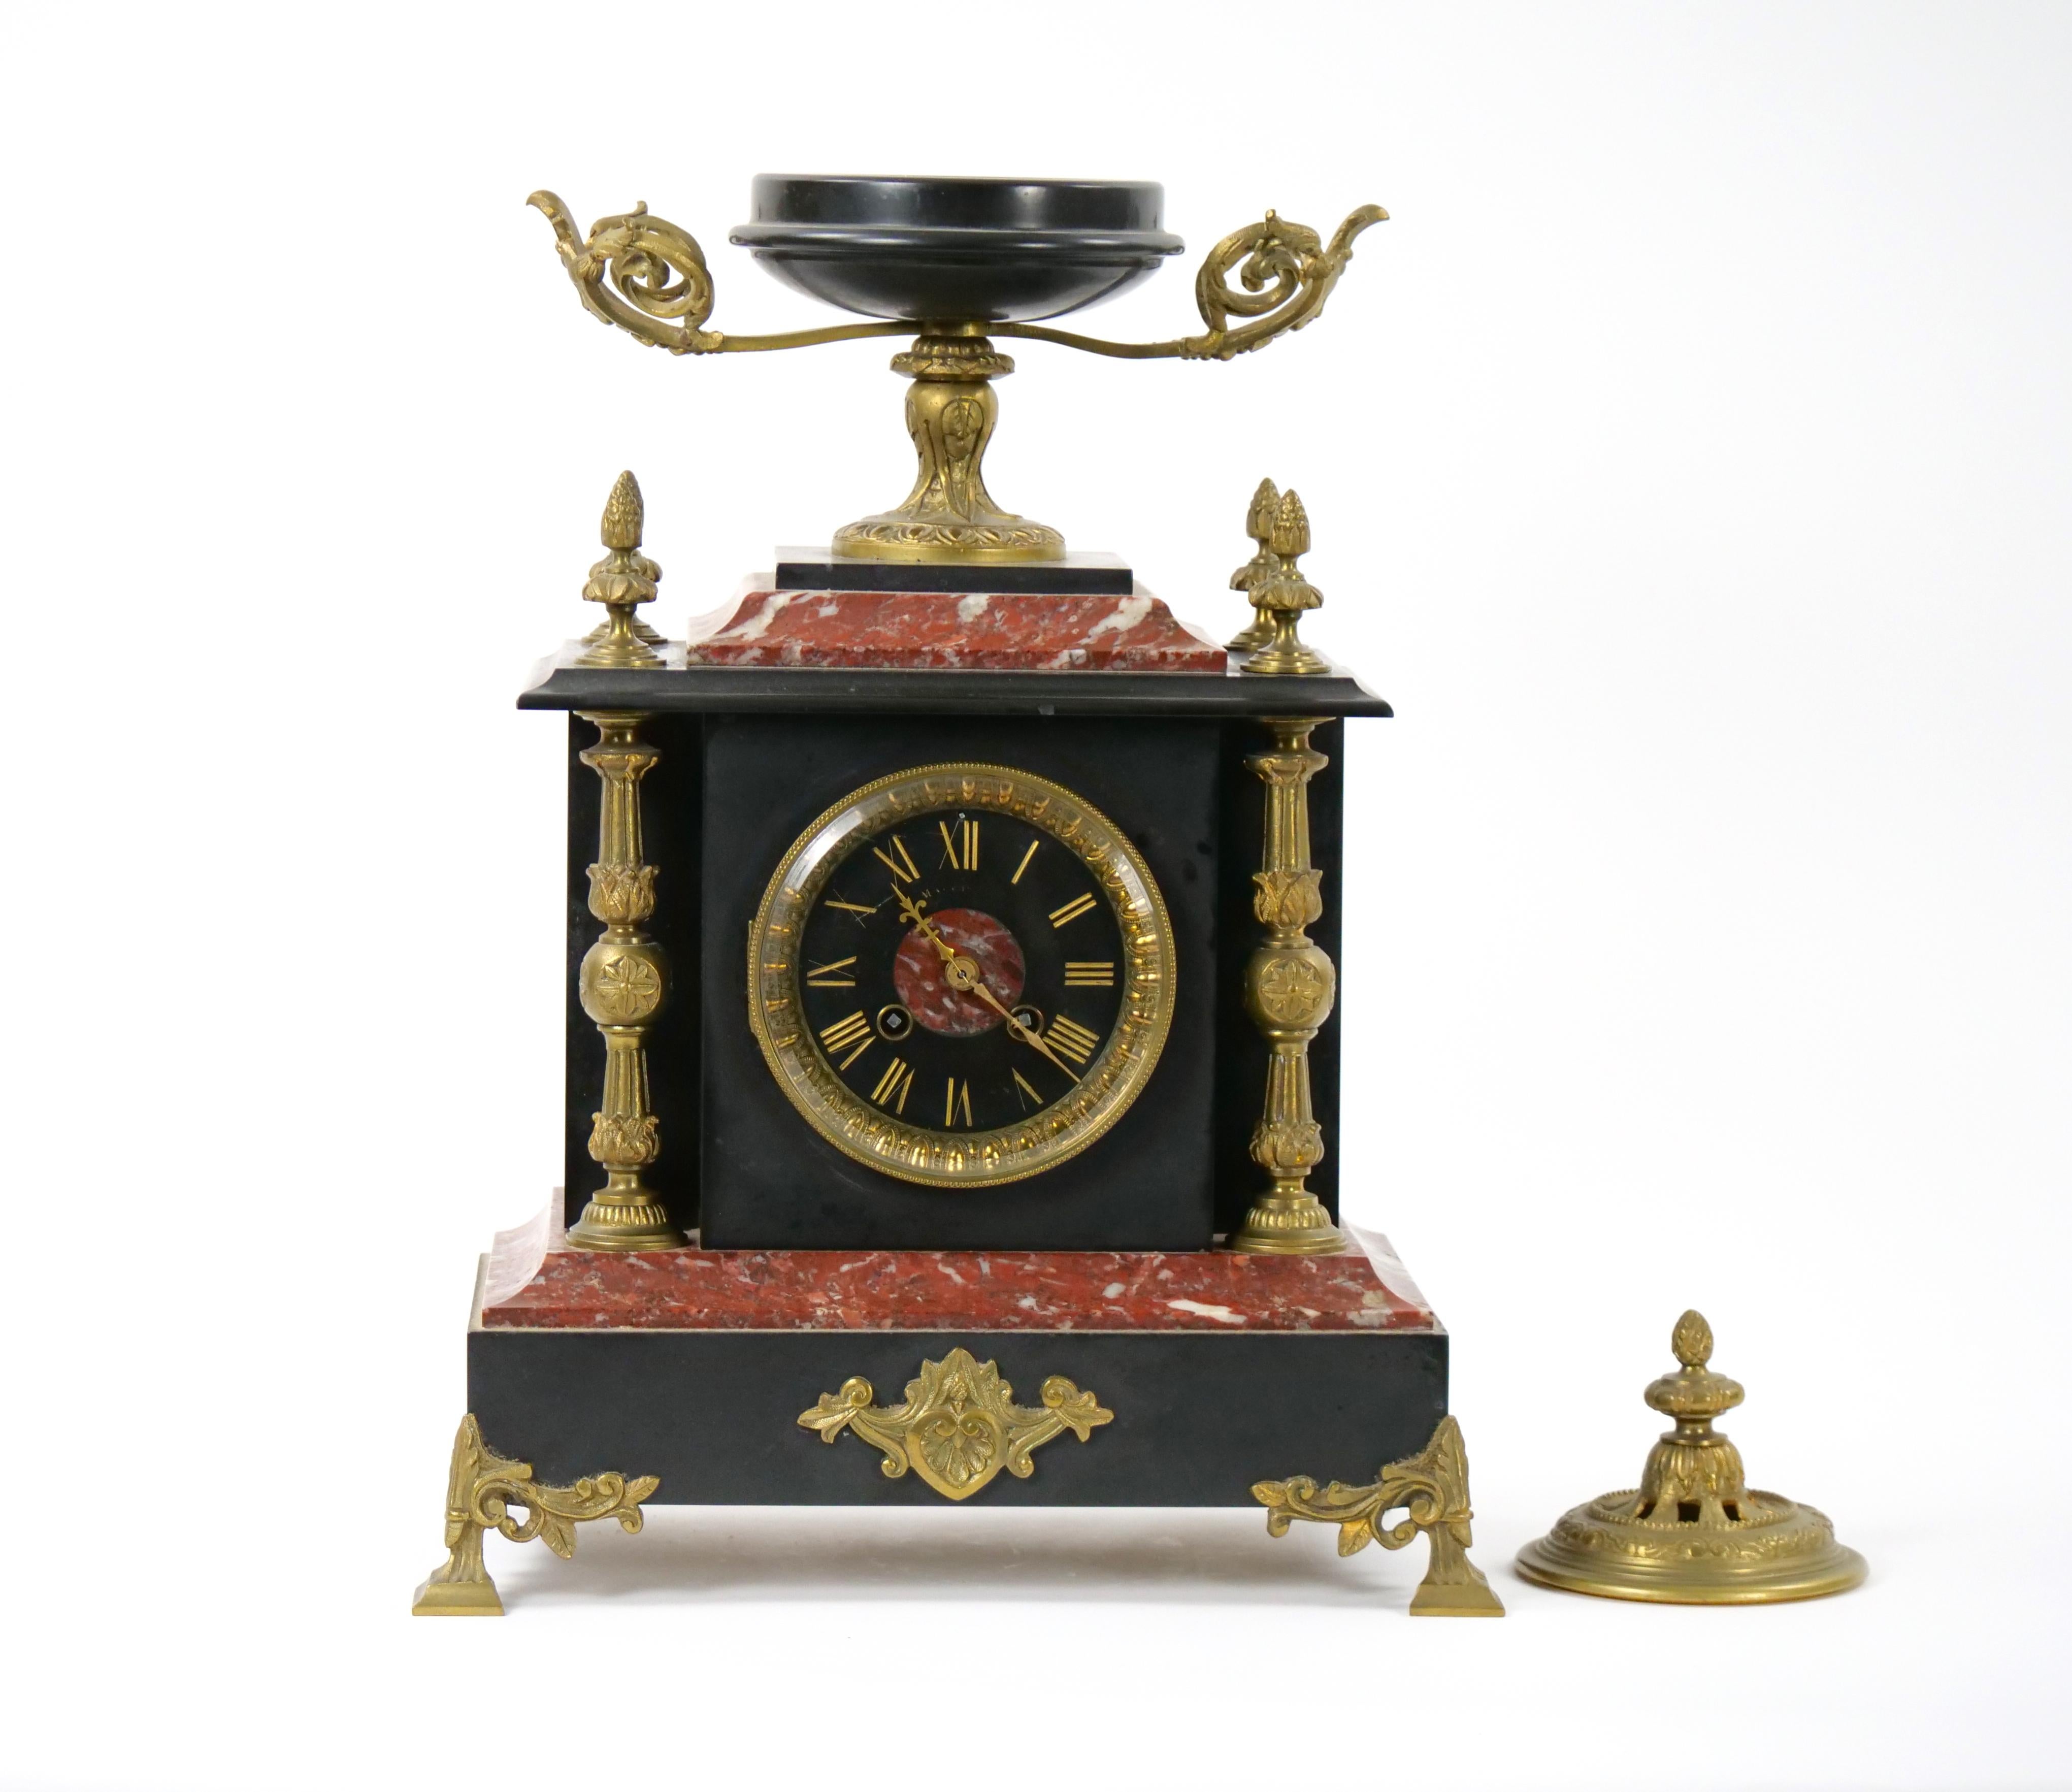 
Transportez-vous dans l'élégance du XIXe siècle avec cette exquise horloge de cheminée en ardoise et marbre rouge, montée sur bronze doré. Méticuleusement fabriqué, ce garde-temps est une célébration de l'art, du design et de la précision. La